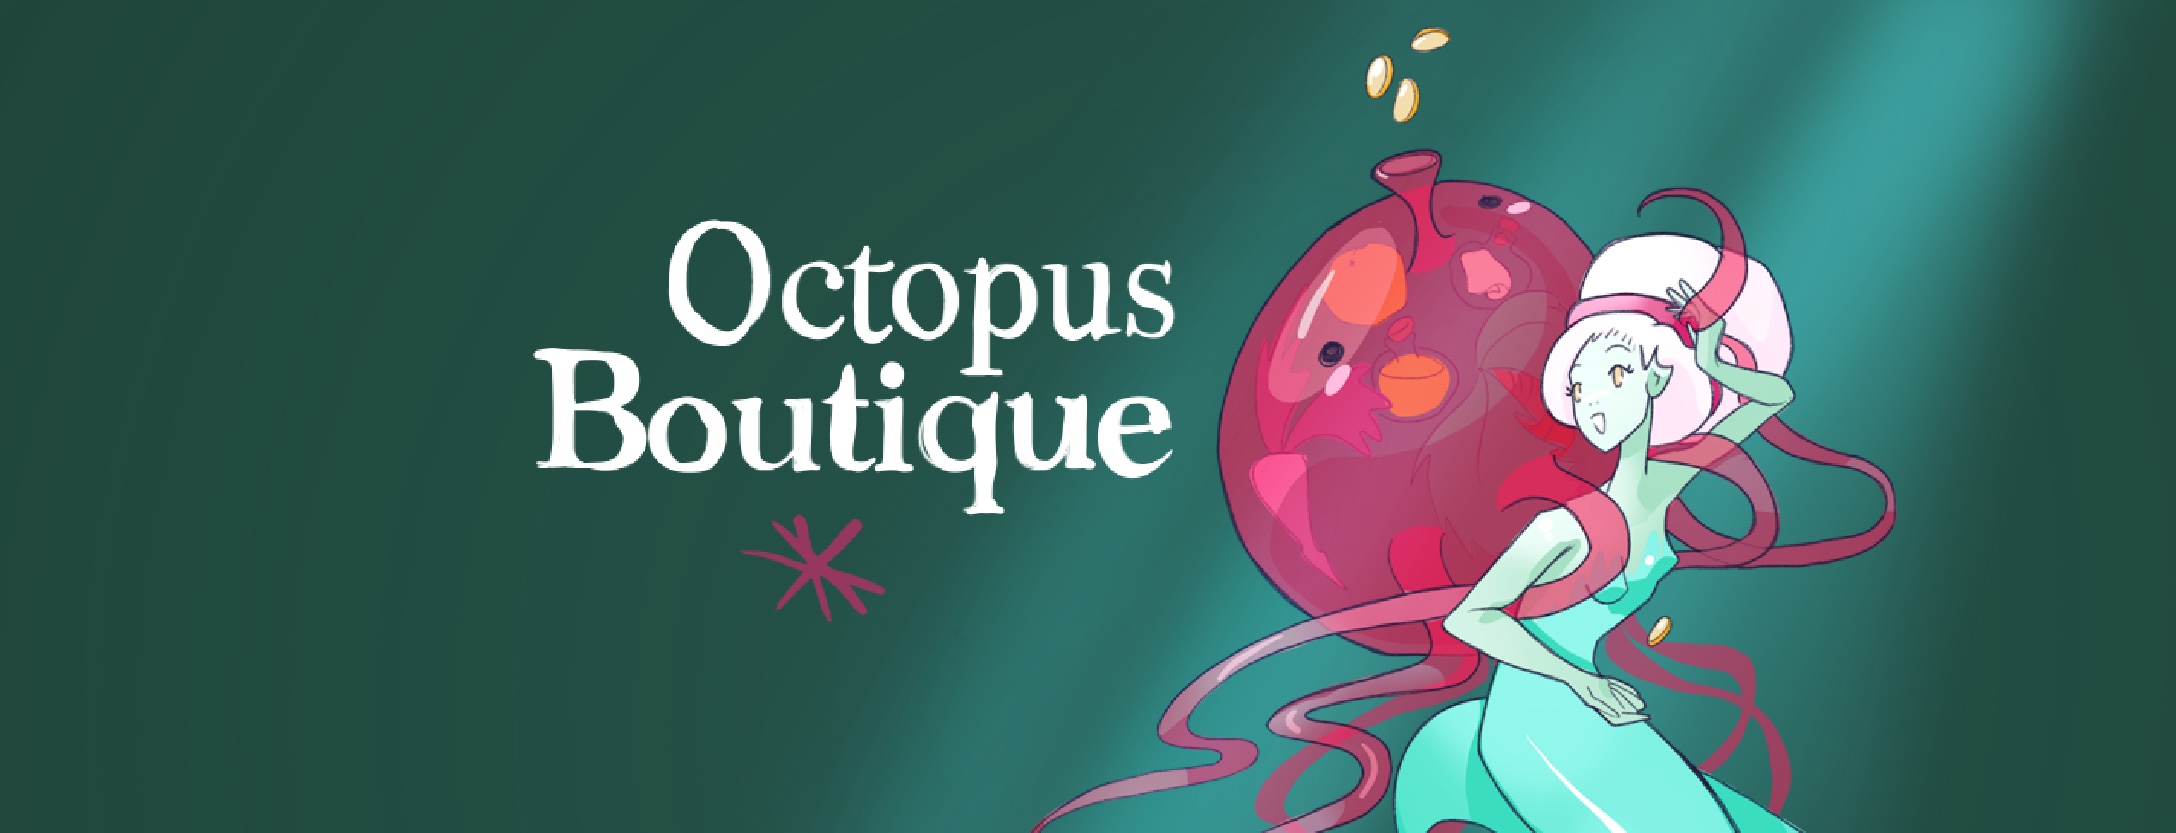 Octopus Boutique